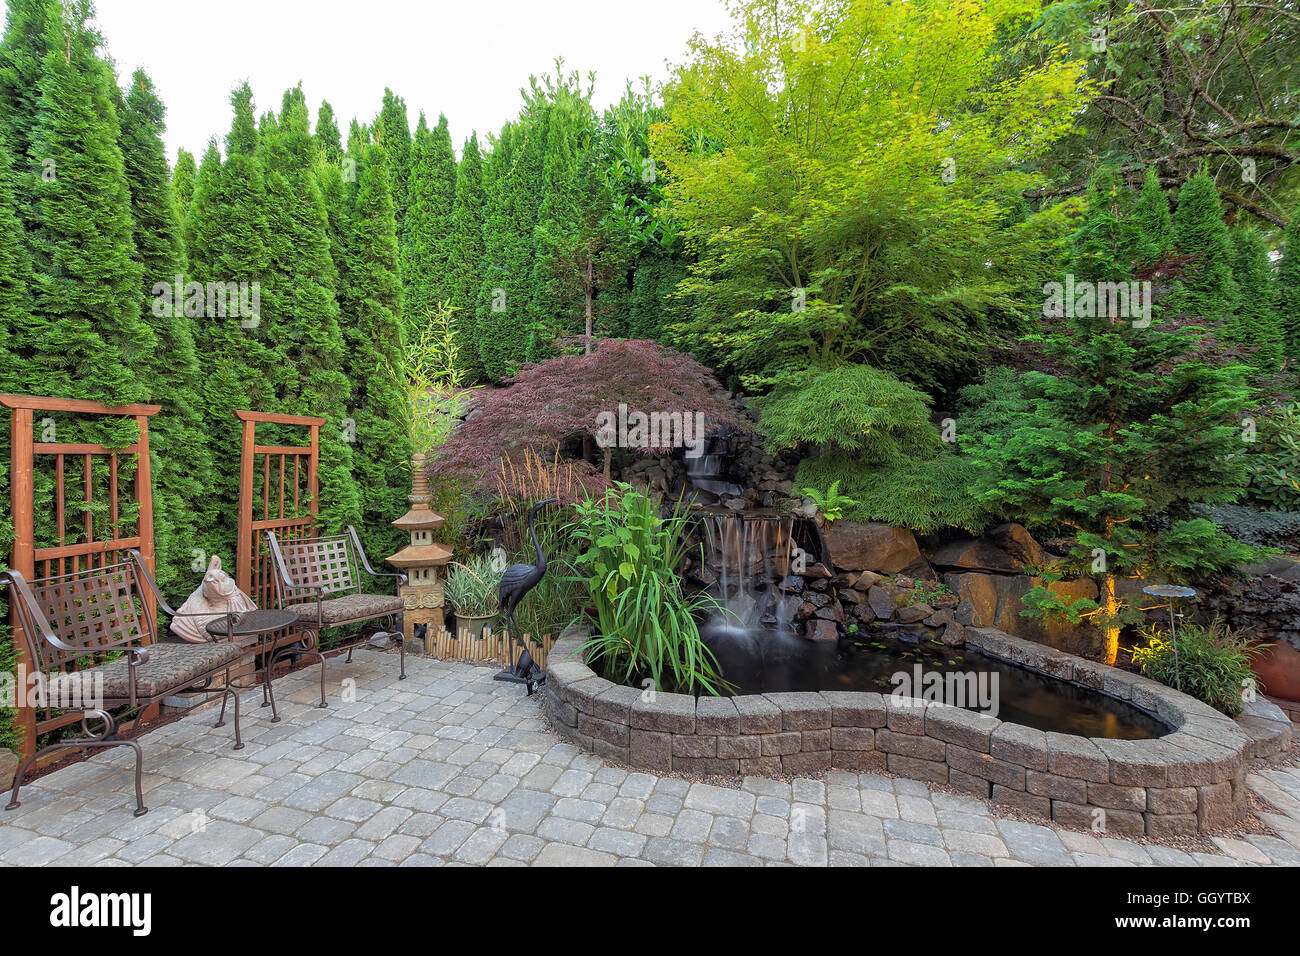 Patio jardín parquizado con cascada estanque plantas árboles enrejado decoración muebles de patio calles de ladrillos Foto de stock